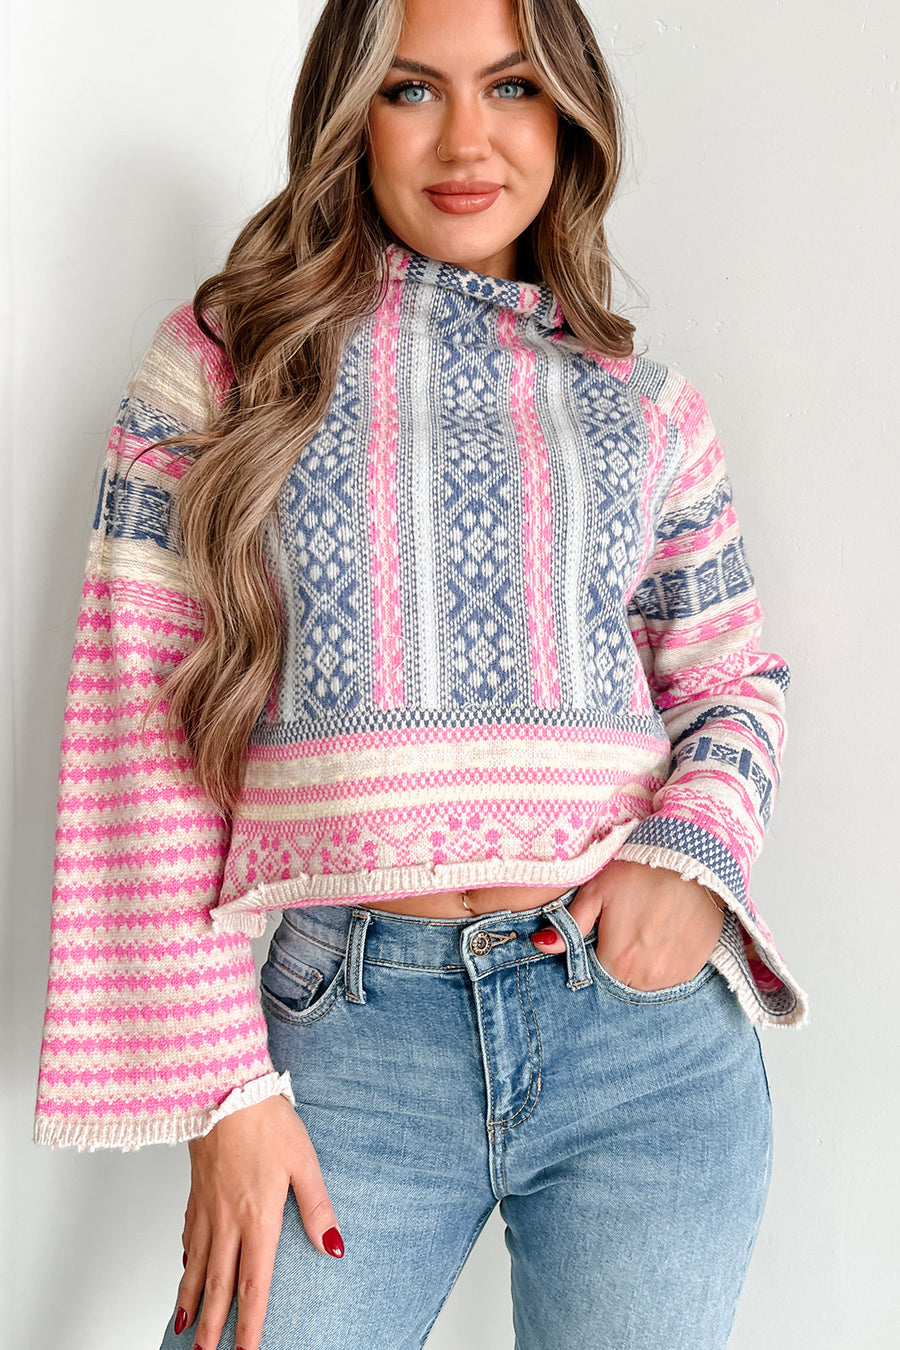 Sweet In Sweden Geometric Crop Sweater (Oatmeal/Hot Pink/Navy) - NanaMacs